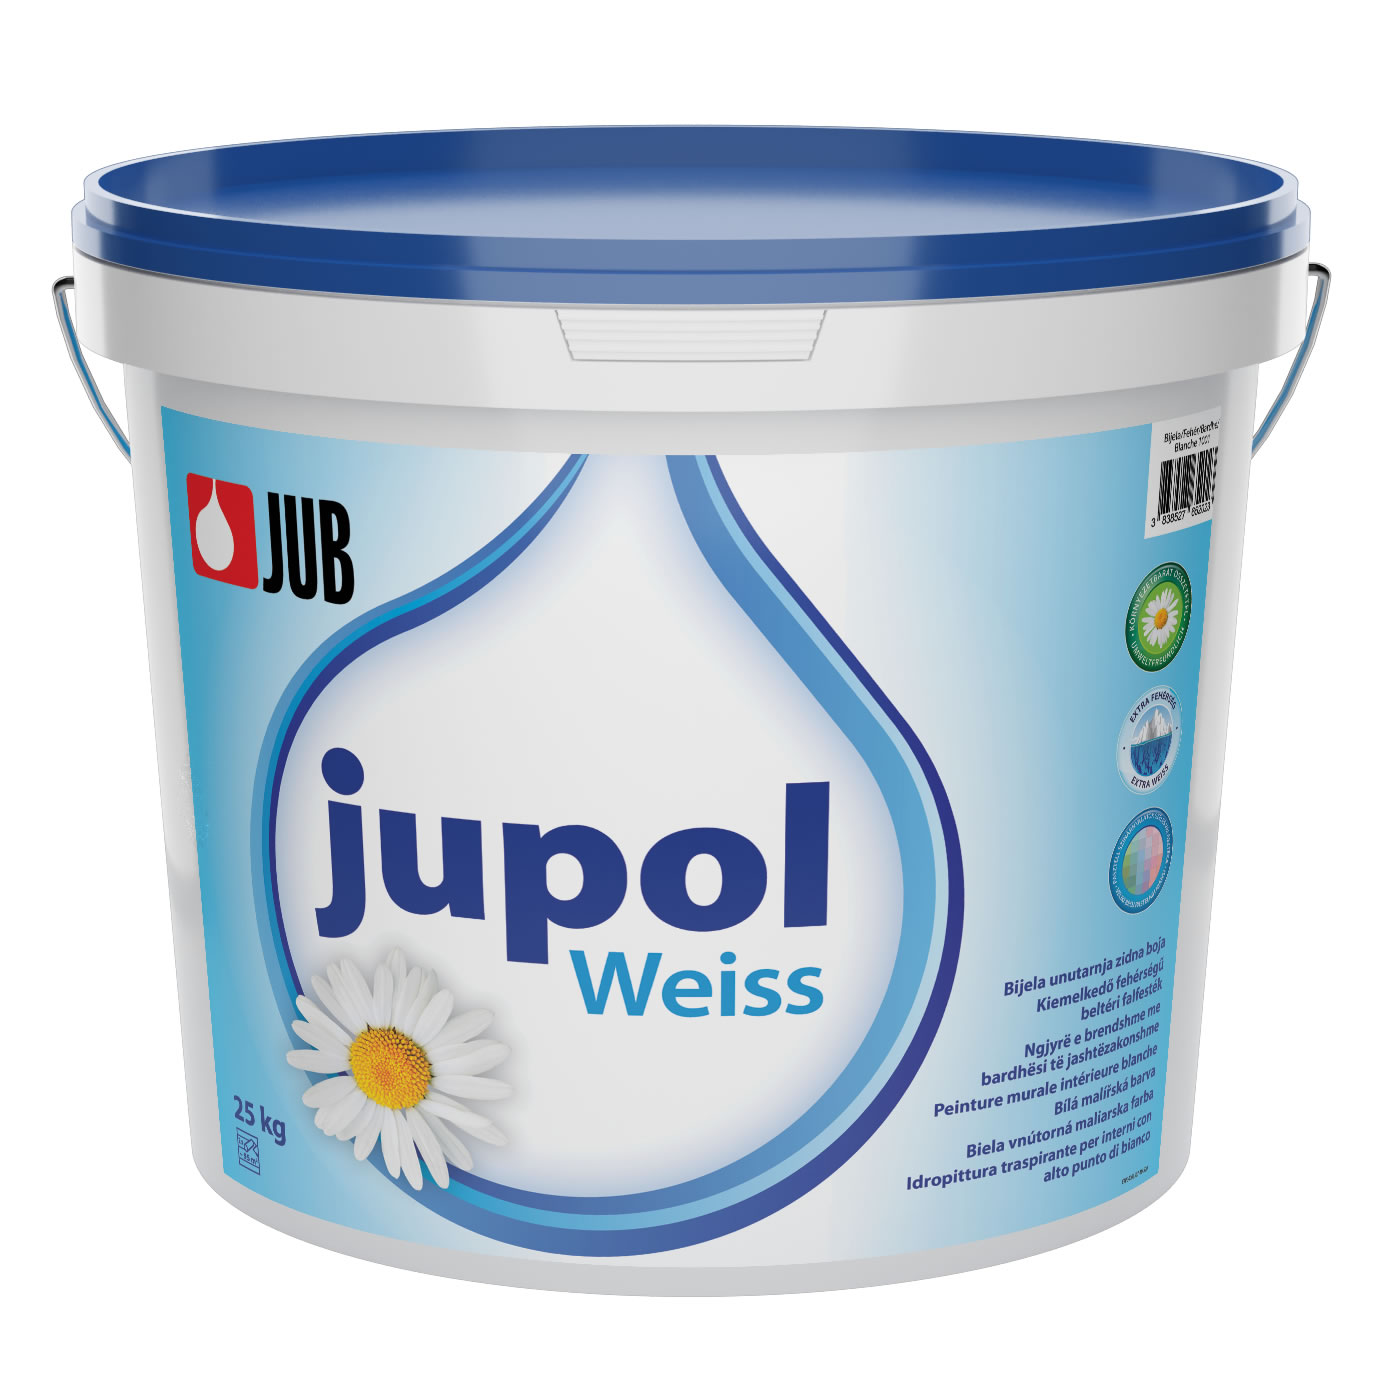 JUB JUPOL Weiss Extra biela maliarska farba Biela,15L